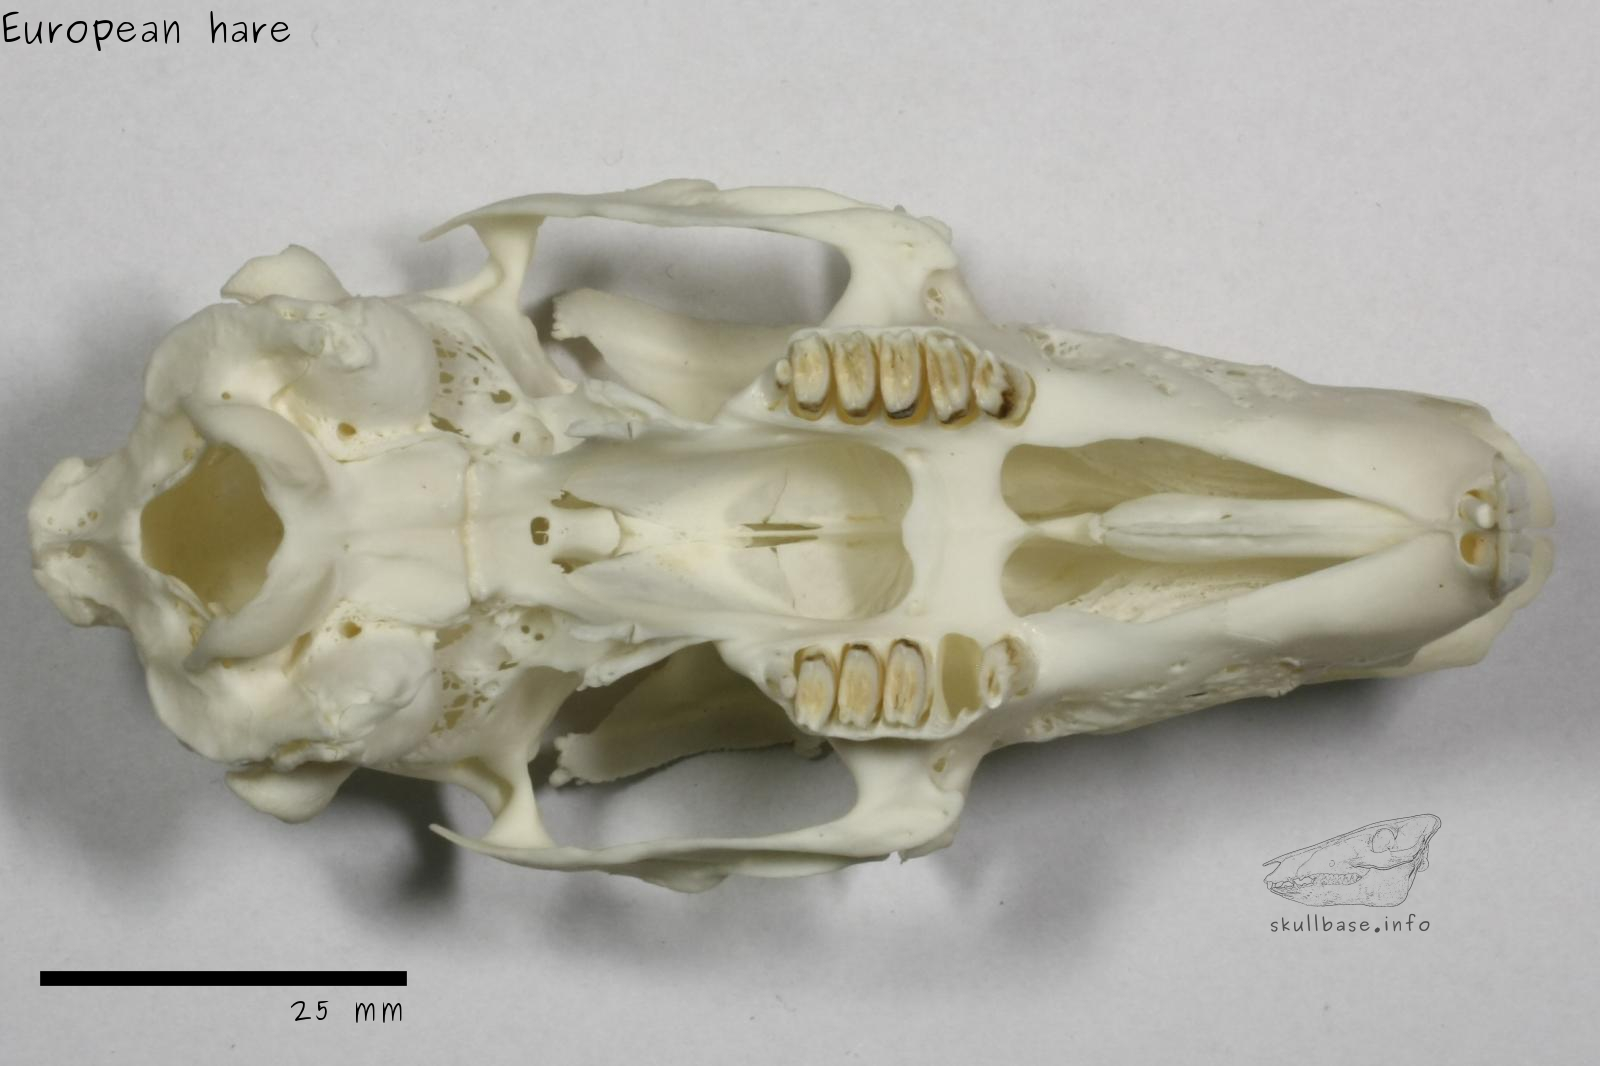 European hare (Lepus europaeus) skull ventral view